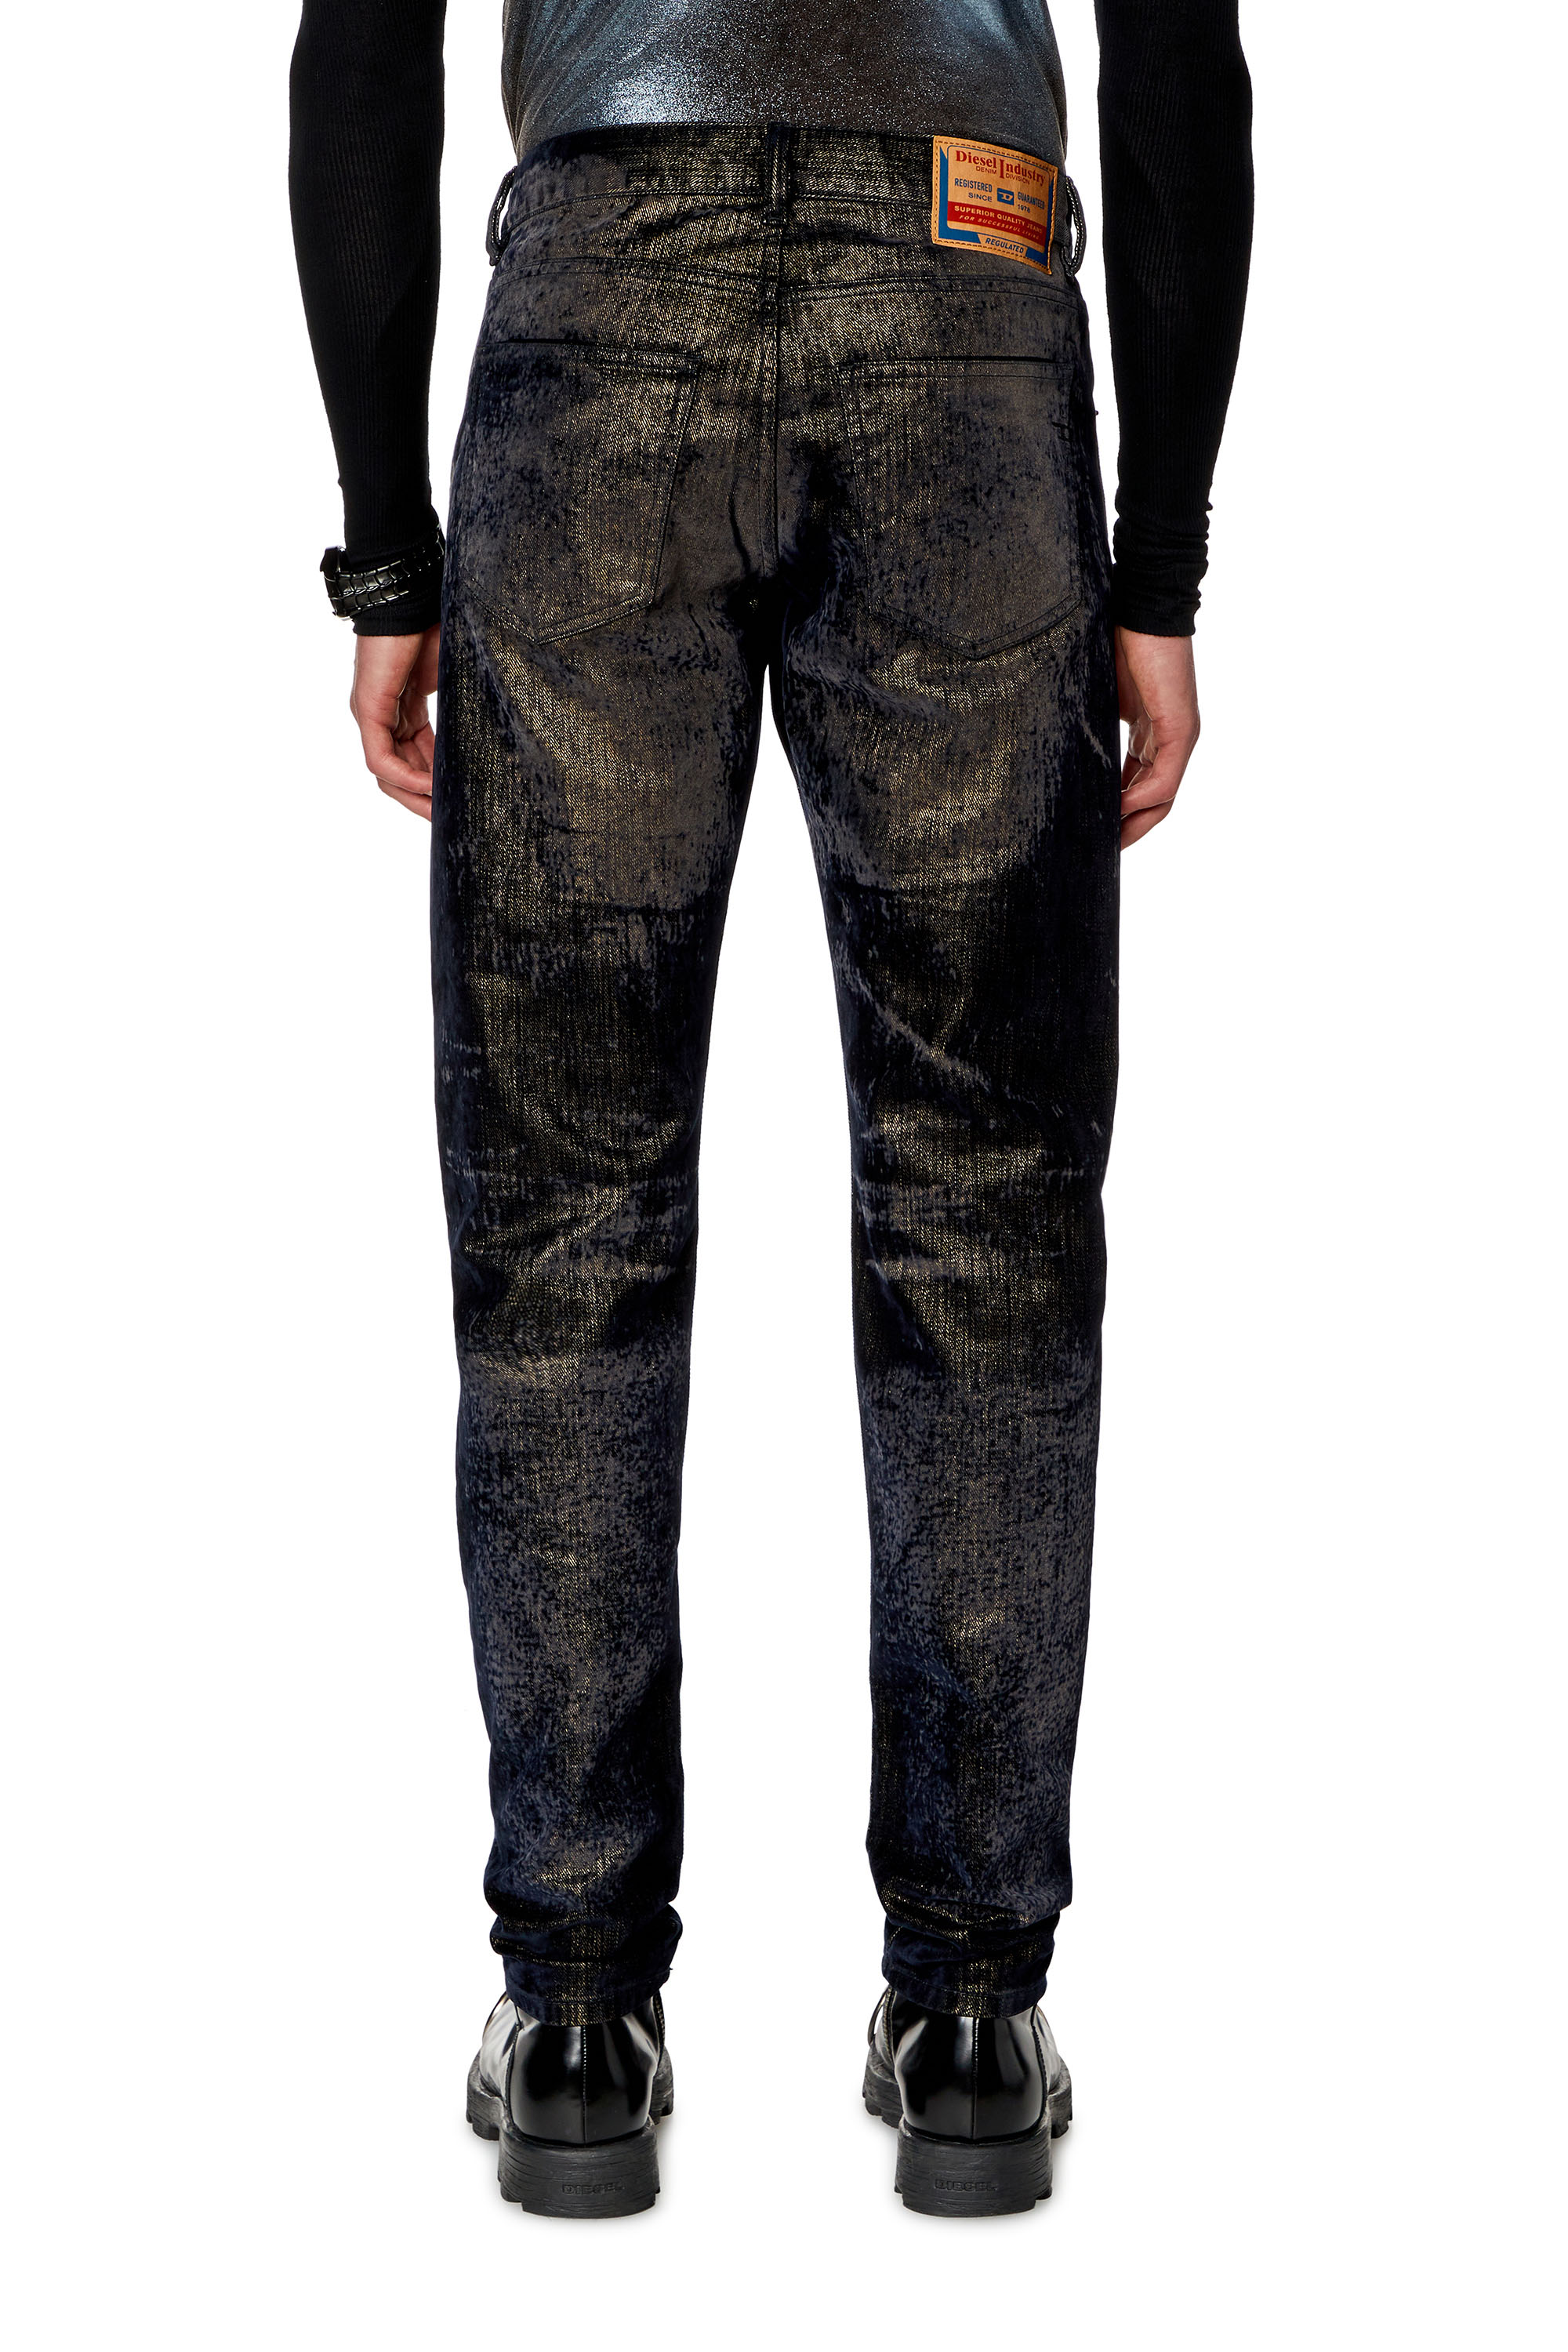 Diesel - Slim Jeans 2019 D-Strukt 09I49, Black/Dark grey - Image 2